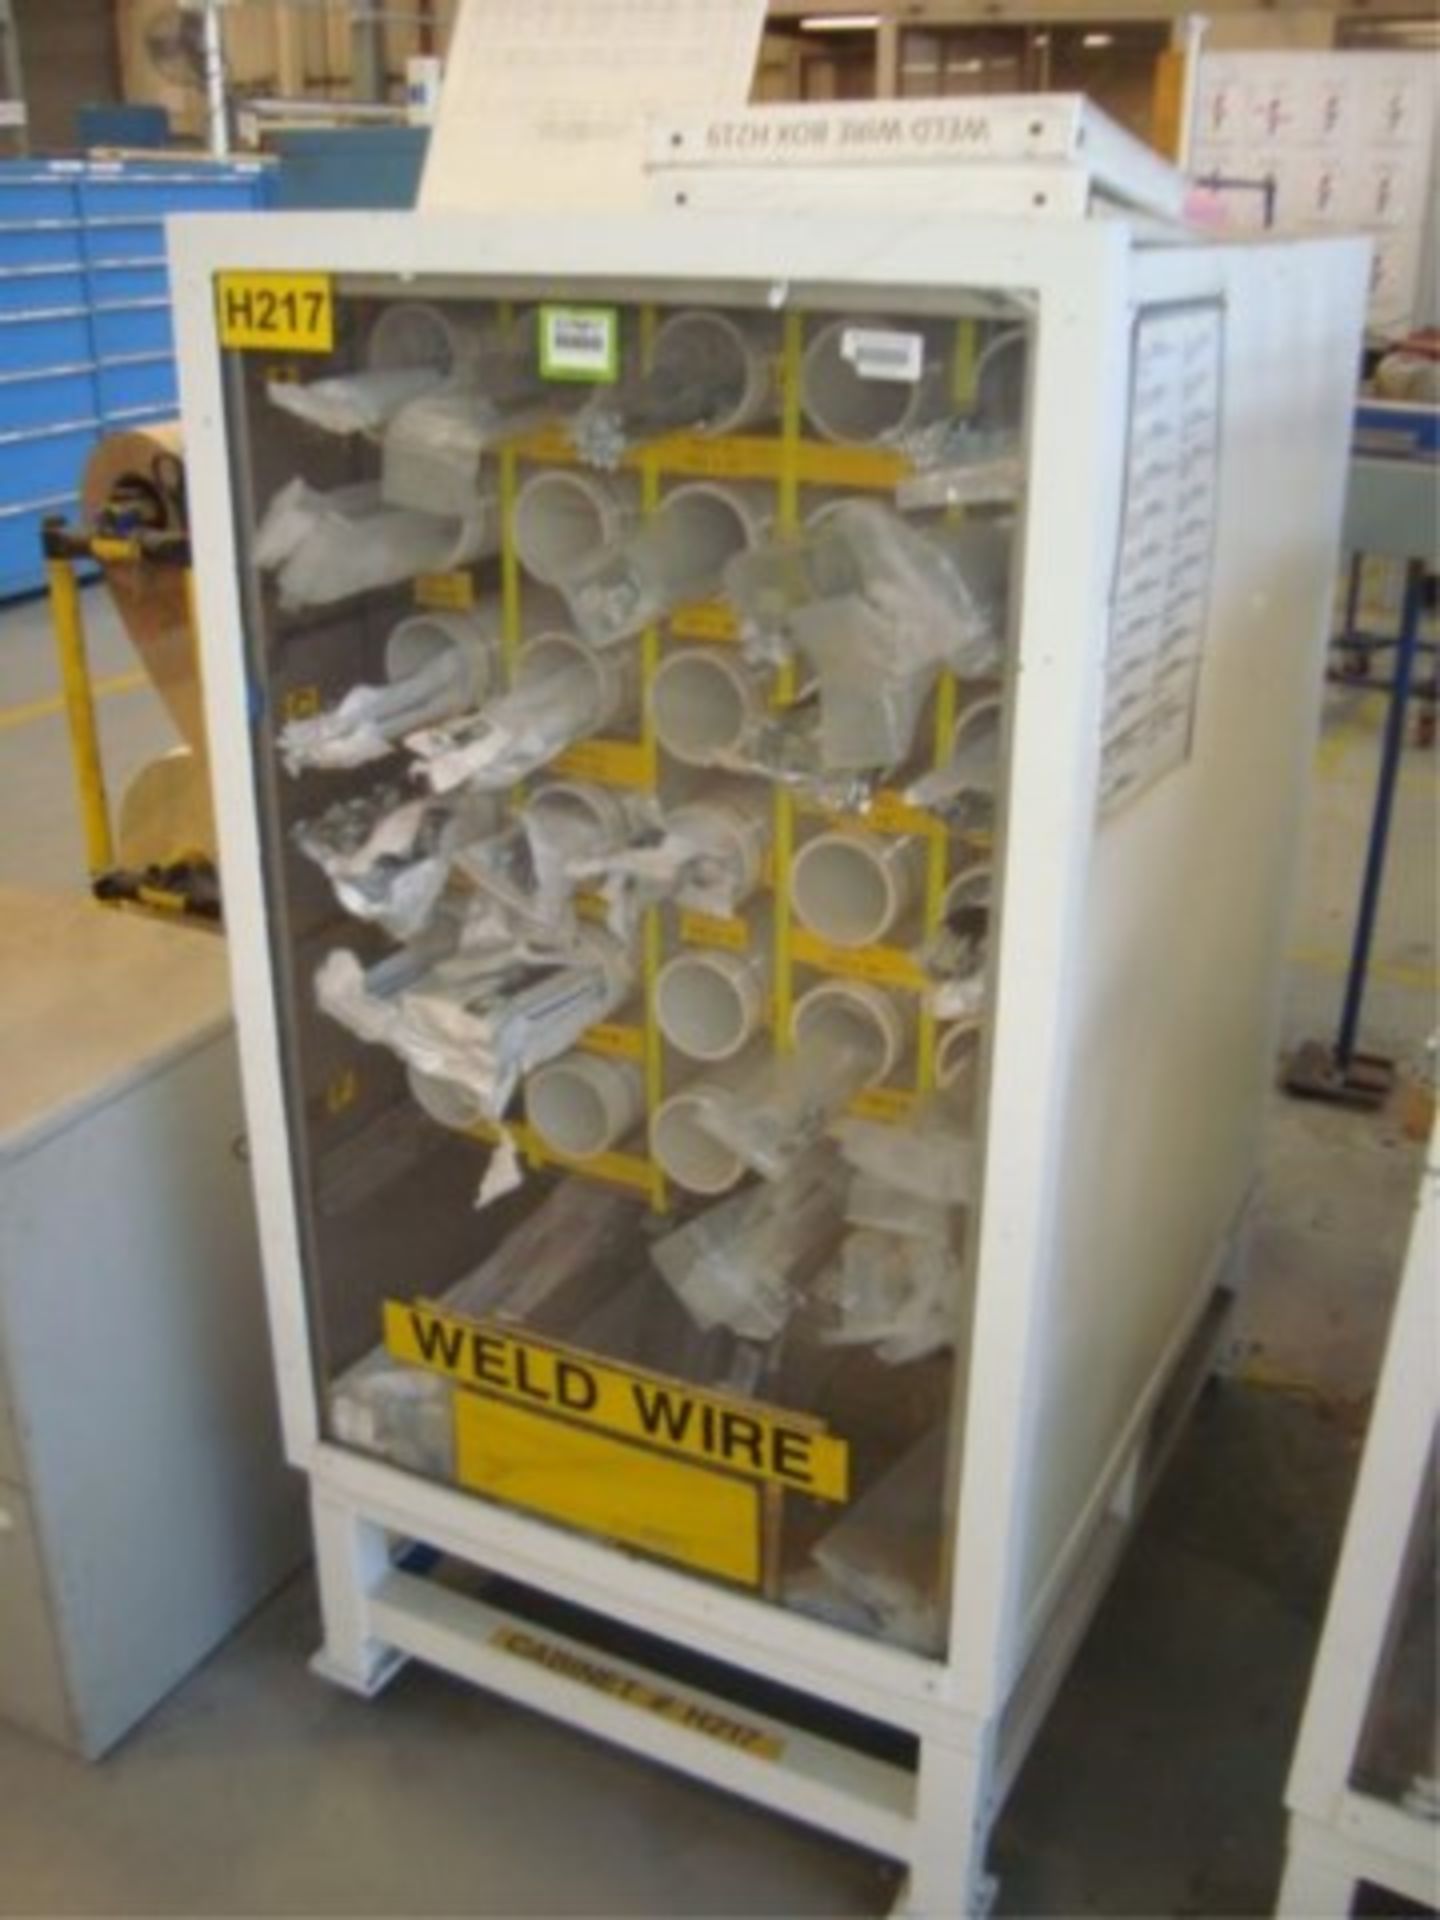 Heavy Duty Weld Wire Supply Cabinet W/Welding - Image 2 of 4